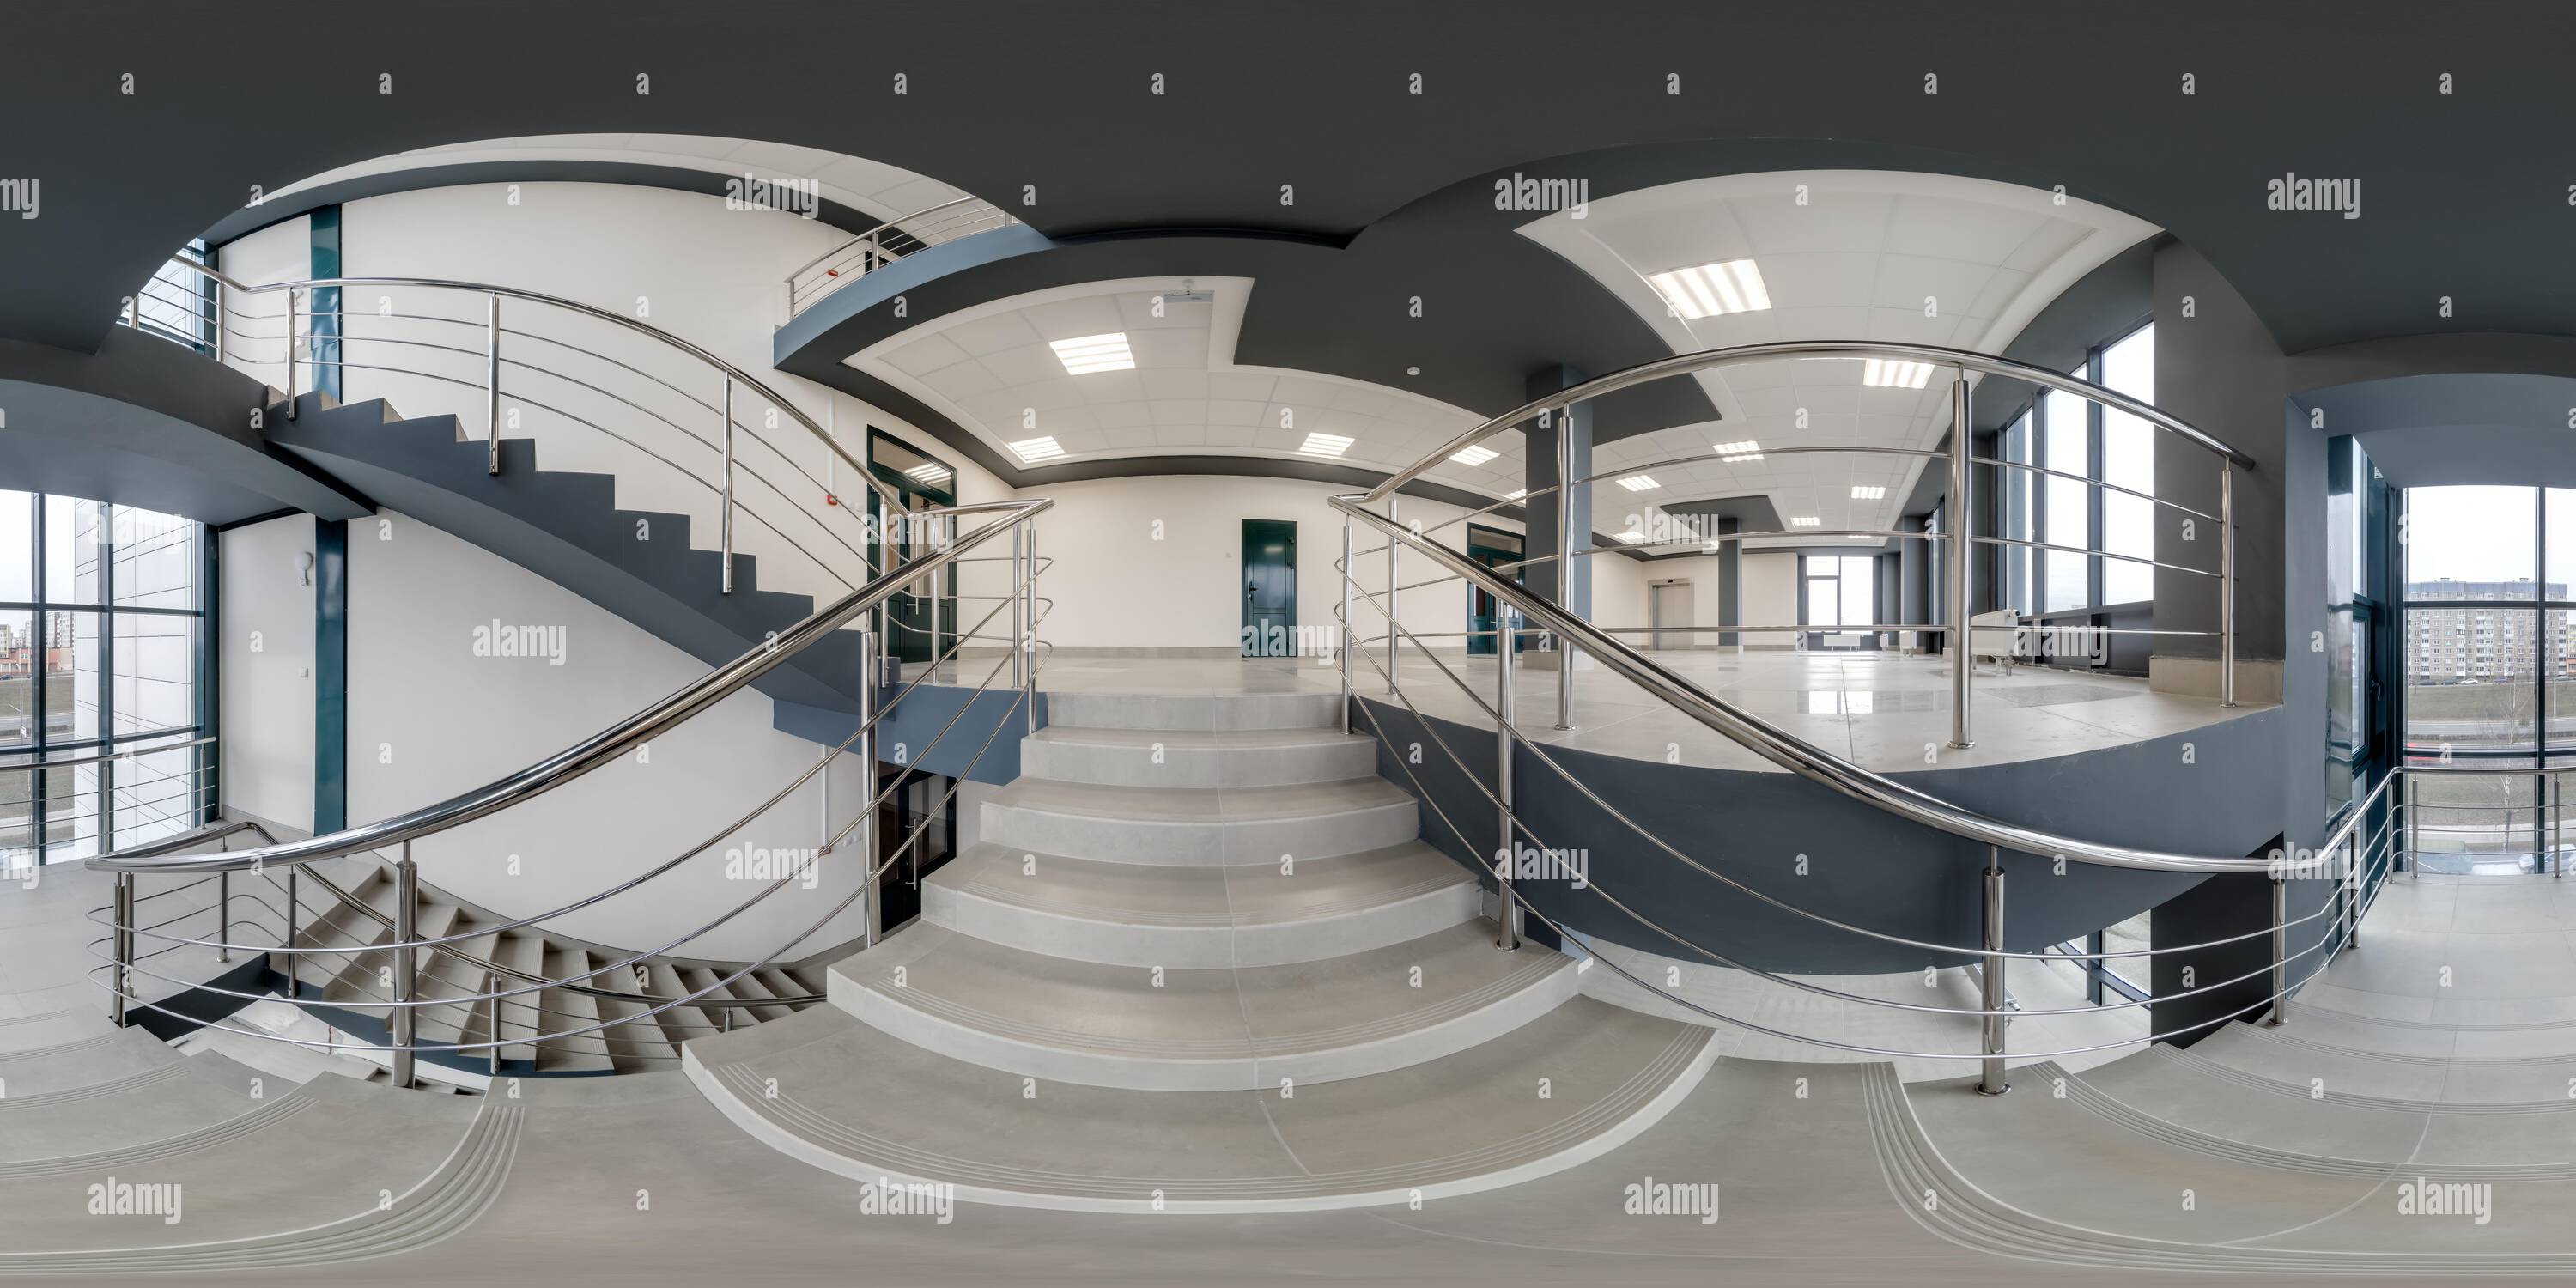 Vue panoramique à 360° de hdri 360 vue panoramique sur les escaliers dans un hall moderne vide avec colonnes, portes et fenêtres panoramiques en projection sphérique sans soudure équirectangulaire, lire